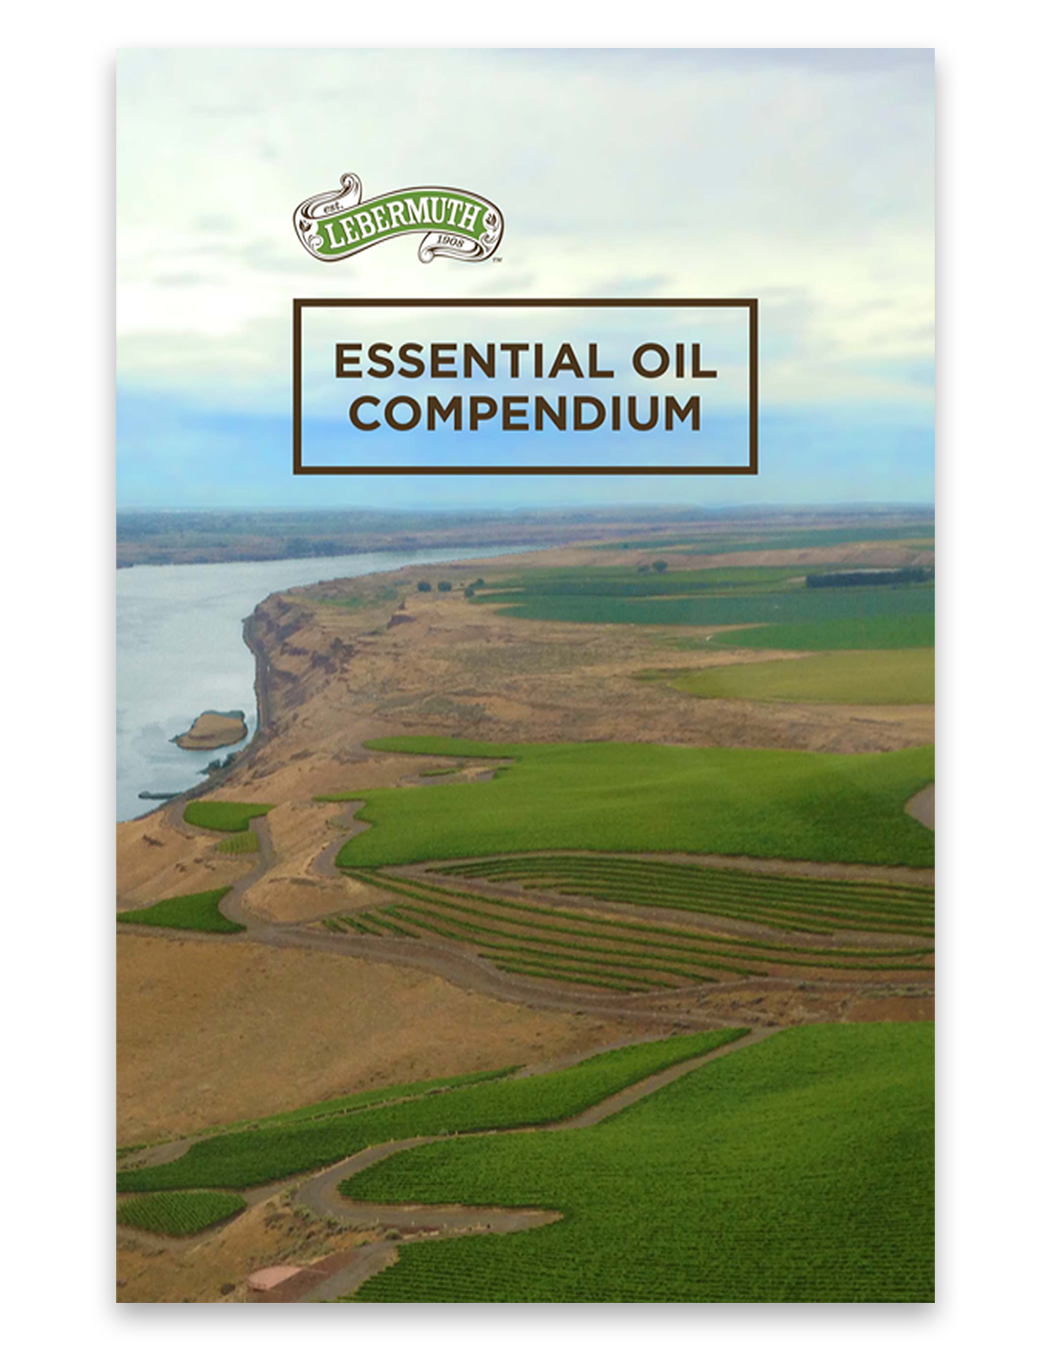 Lebermuth-Essential-Oil-Compendium 3-1